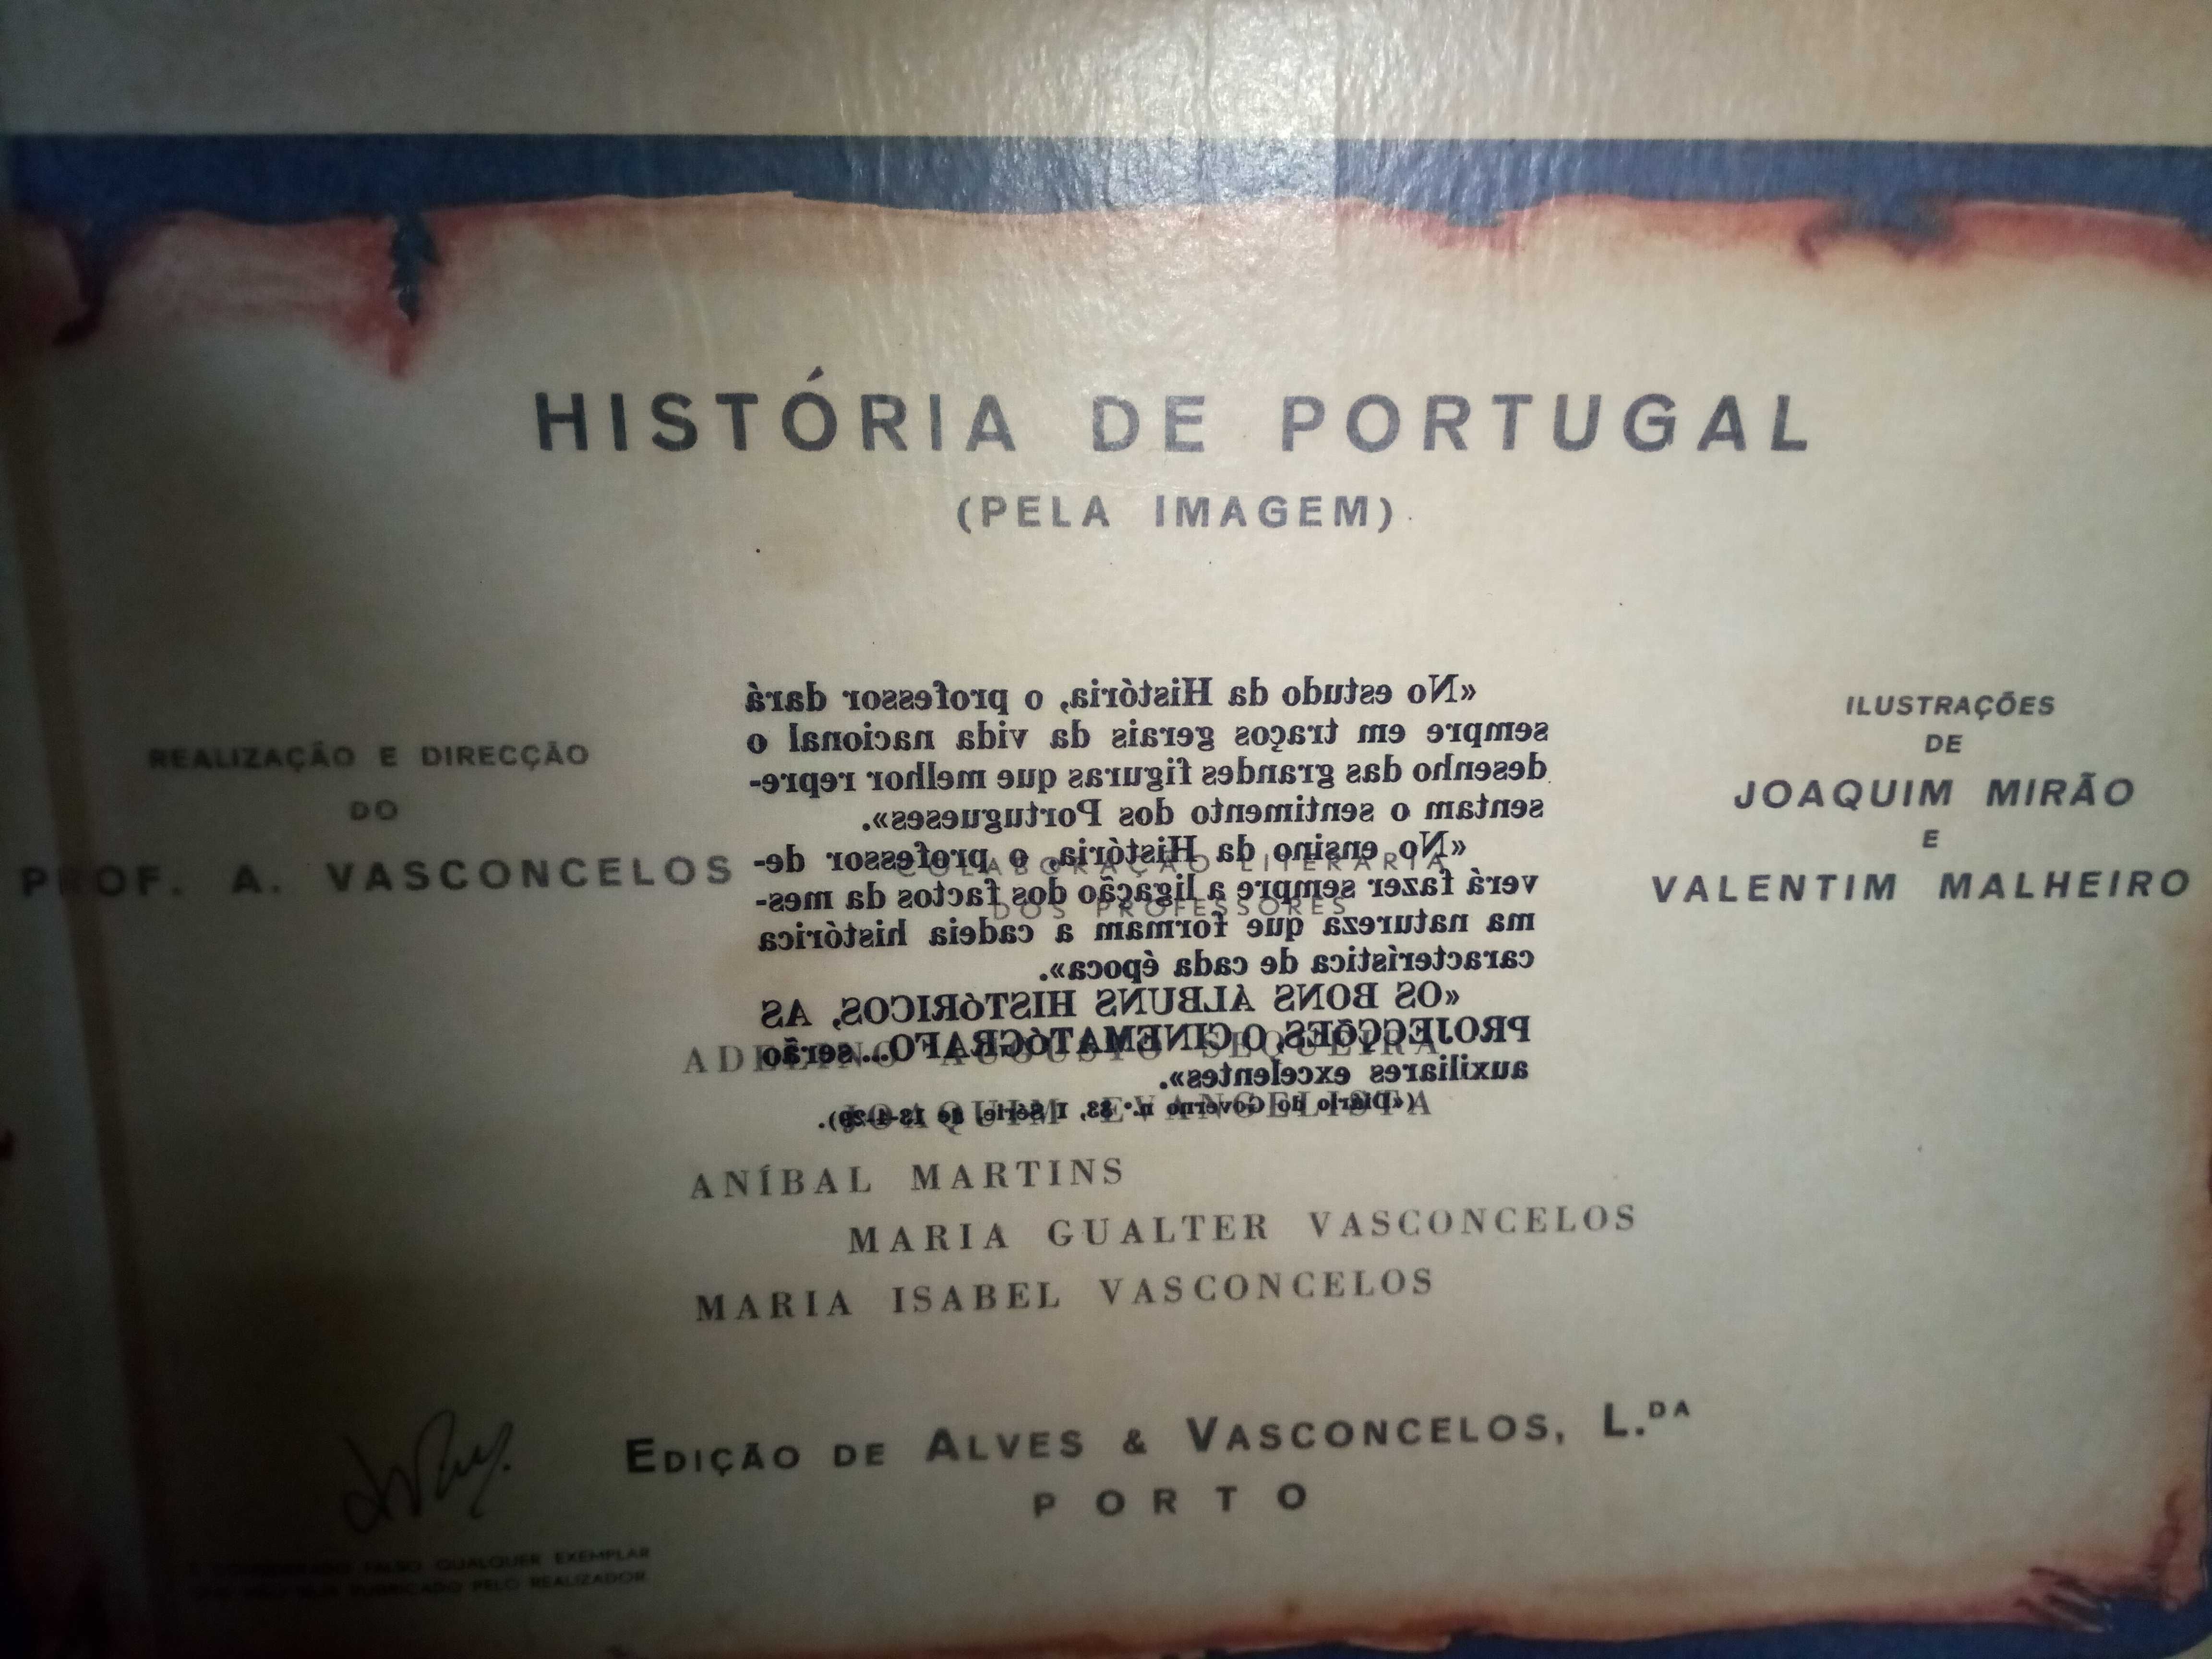 Historia de Portugal (Pela Imagem) - PROF. A. Vasconcelos, livro raro